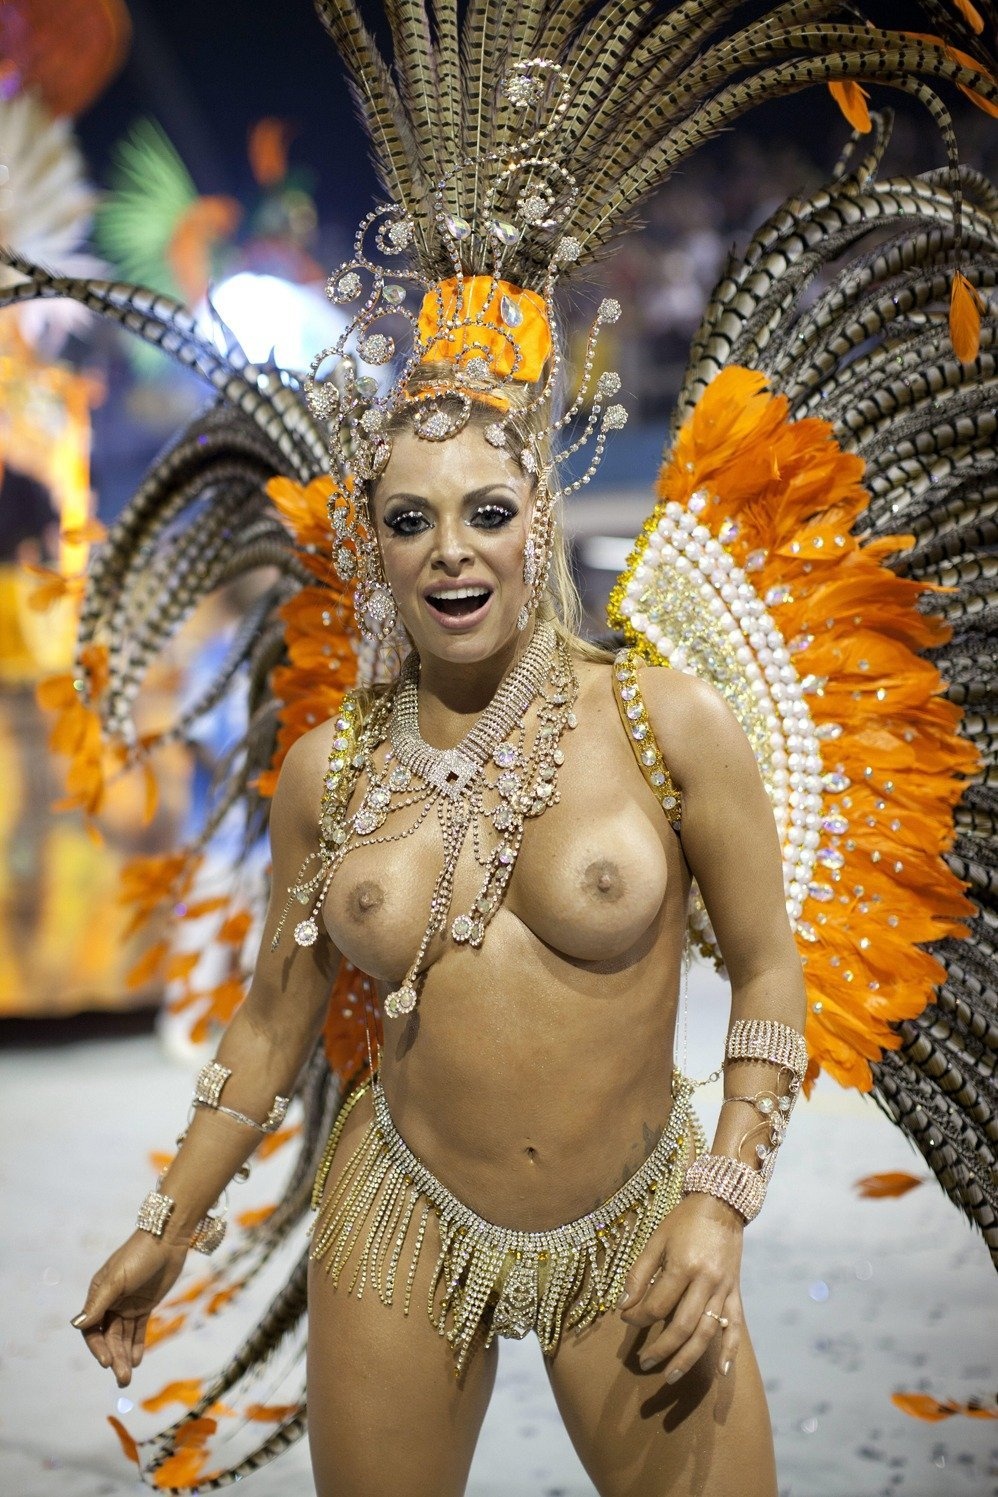 Порно видео бразильская оргия вечеринка карнавал